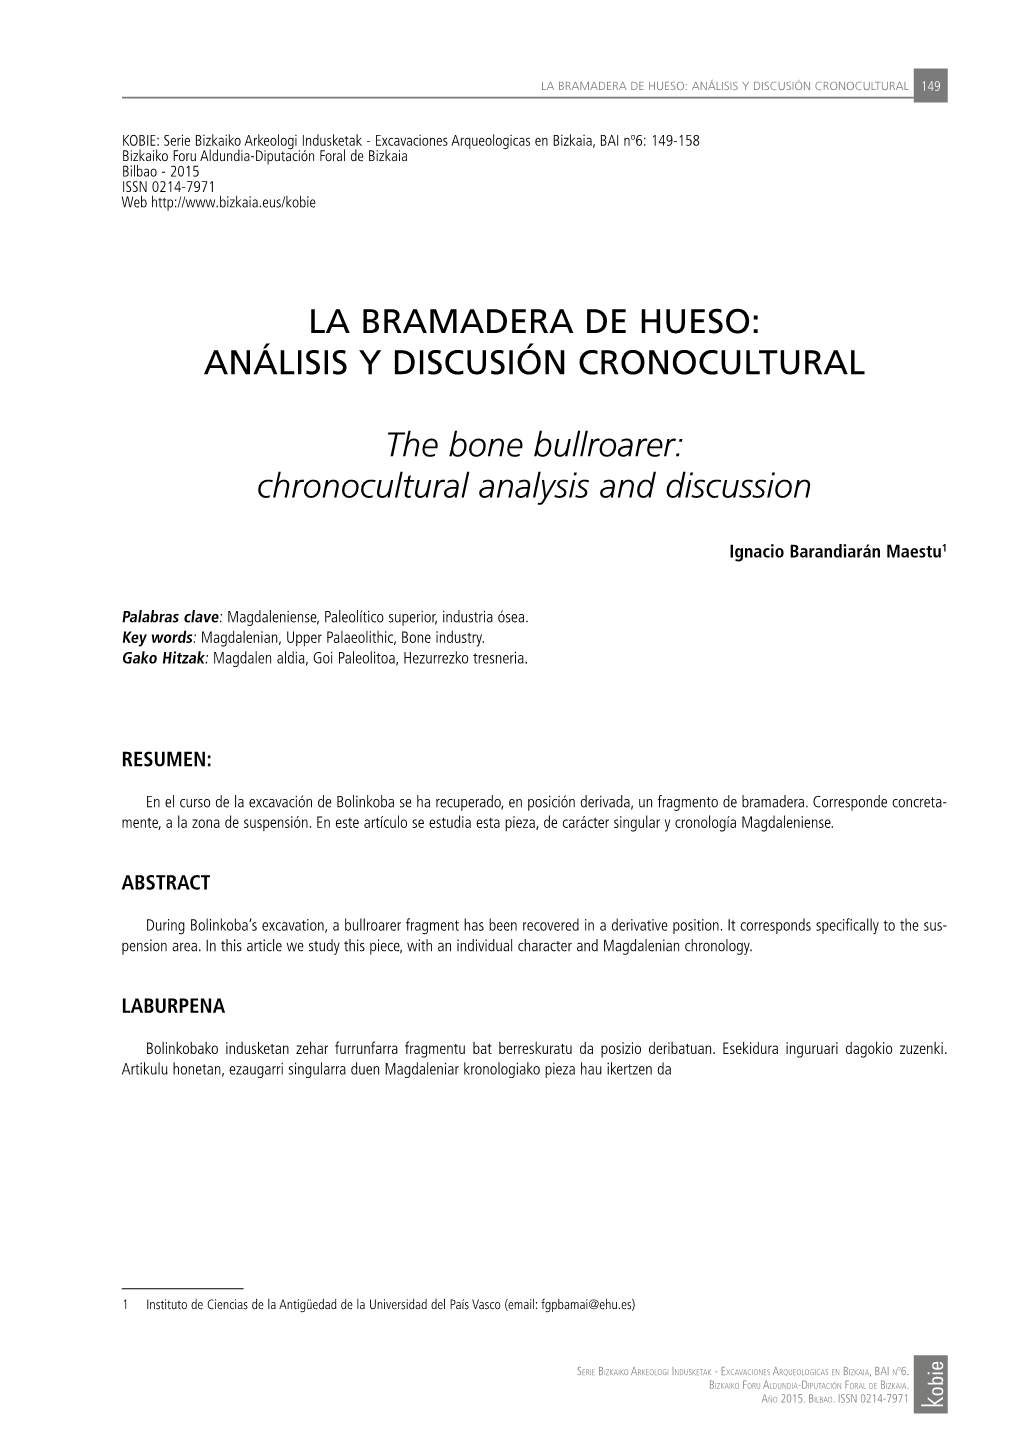 La Bramadera De Hueso: Análisis Y Discusión Cronocultural 149